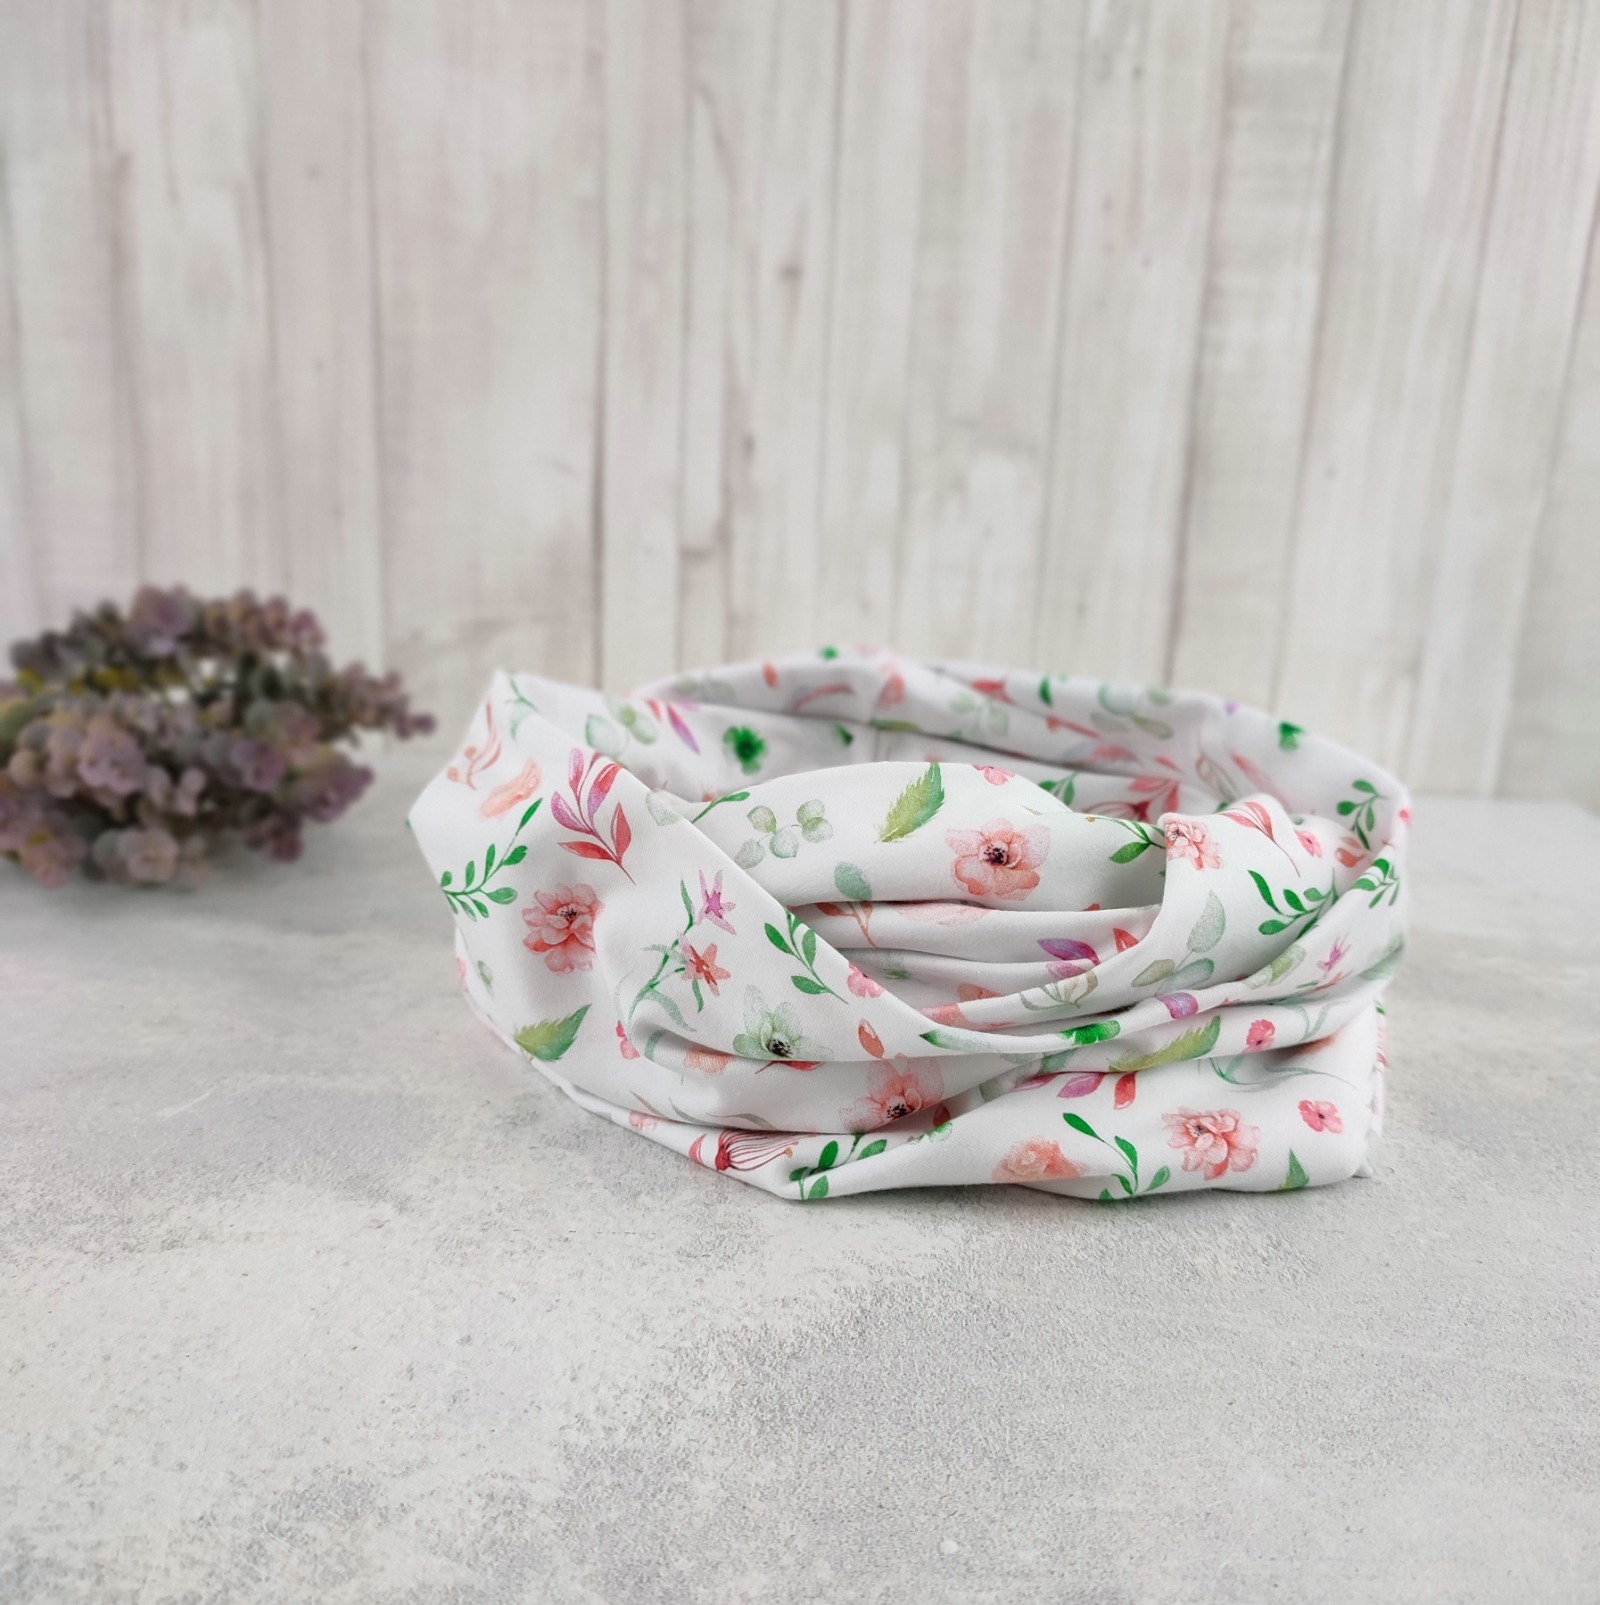 Loop Schlauchschal weiß mit kleinem Blumenmuster in lachsrosa und grün - Schal für Damen aus Jersey 4